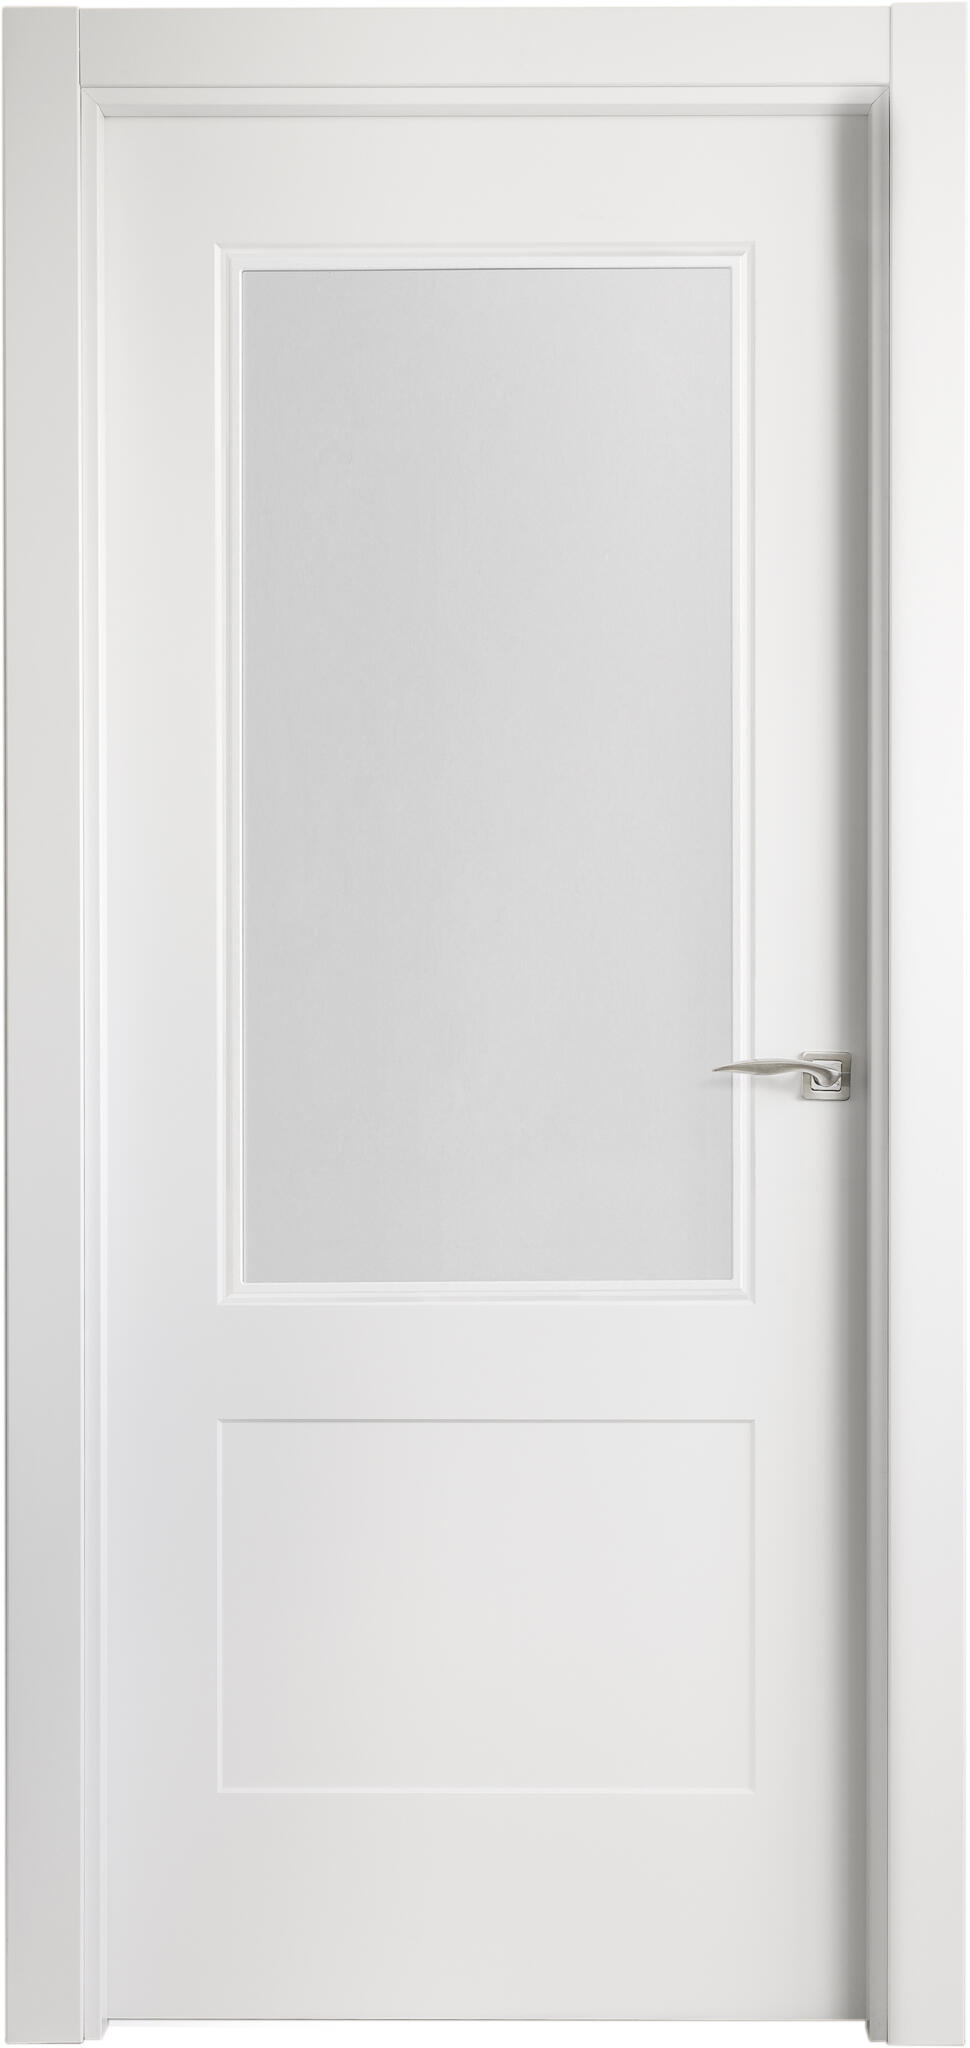 Puerta atlanta plus blanco apertura izquierda con cristal de 92,5cm